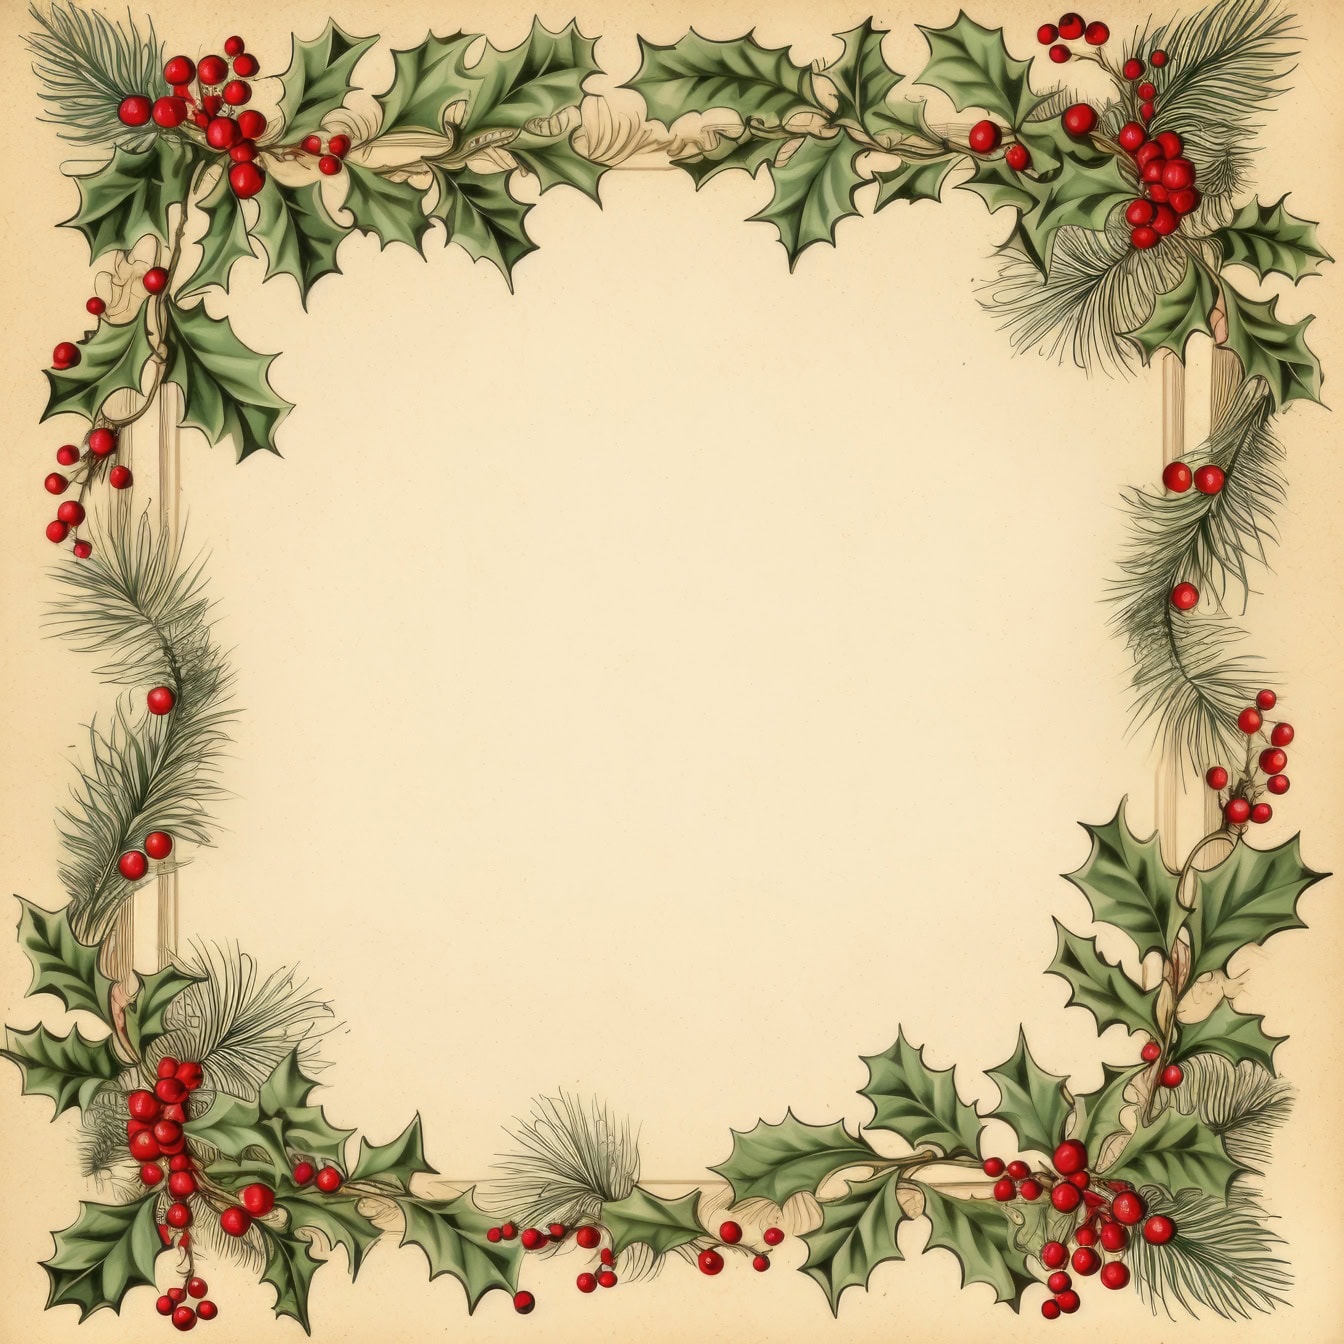 Karácsonyi képeslap magyalkoszorúval és bogyókkal, tökéletes ünnepi üdvözlőlap sablon